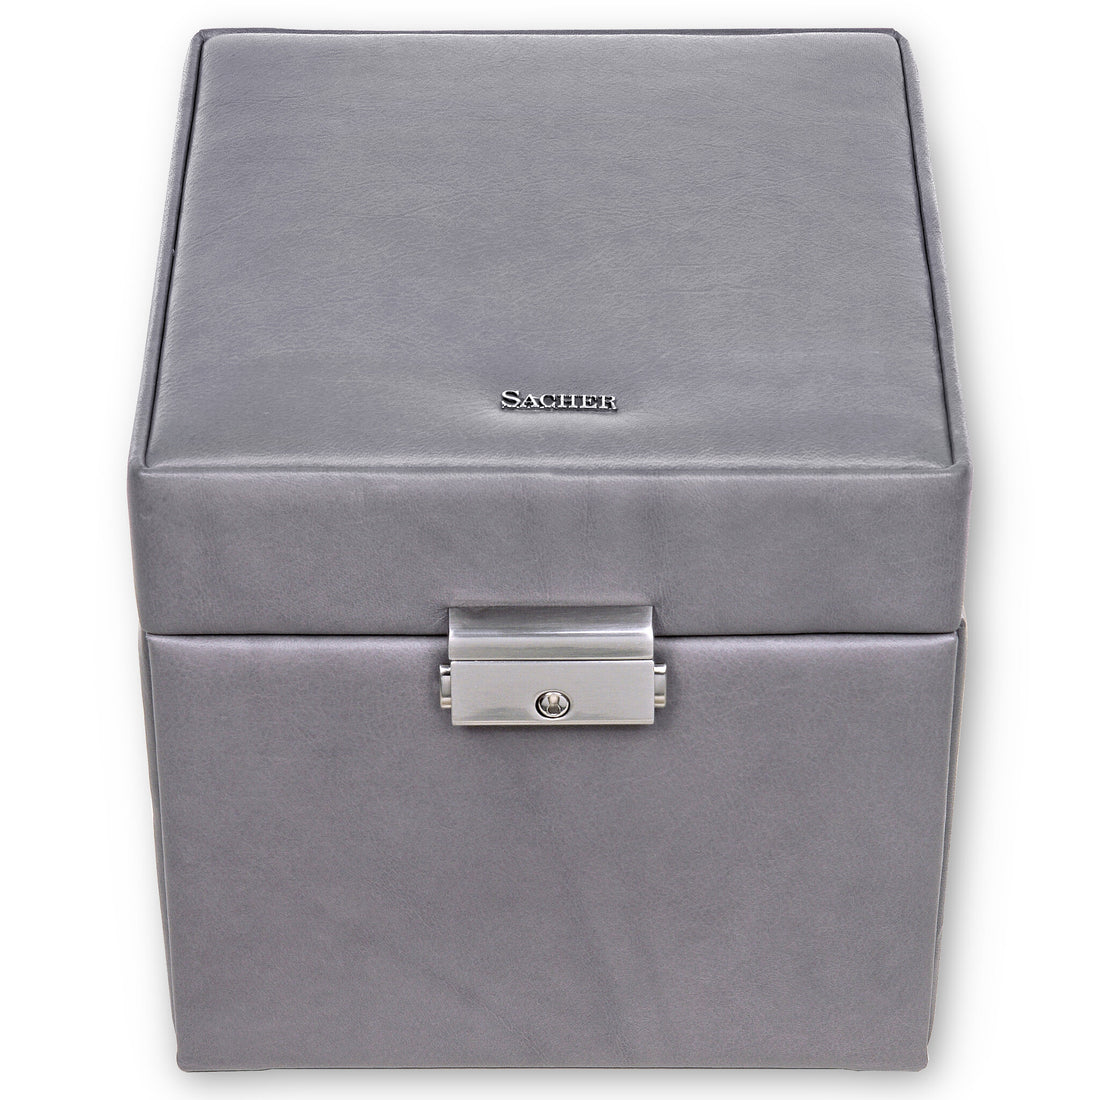 jewellery case Evita fleur venice / grey (leather)